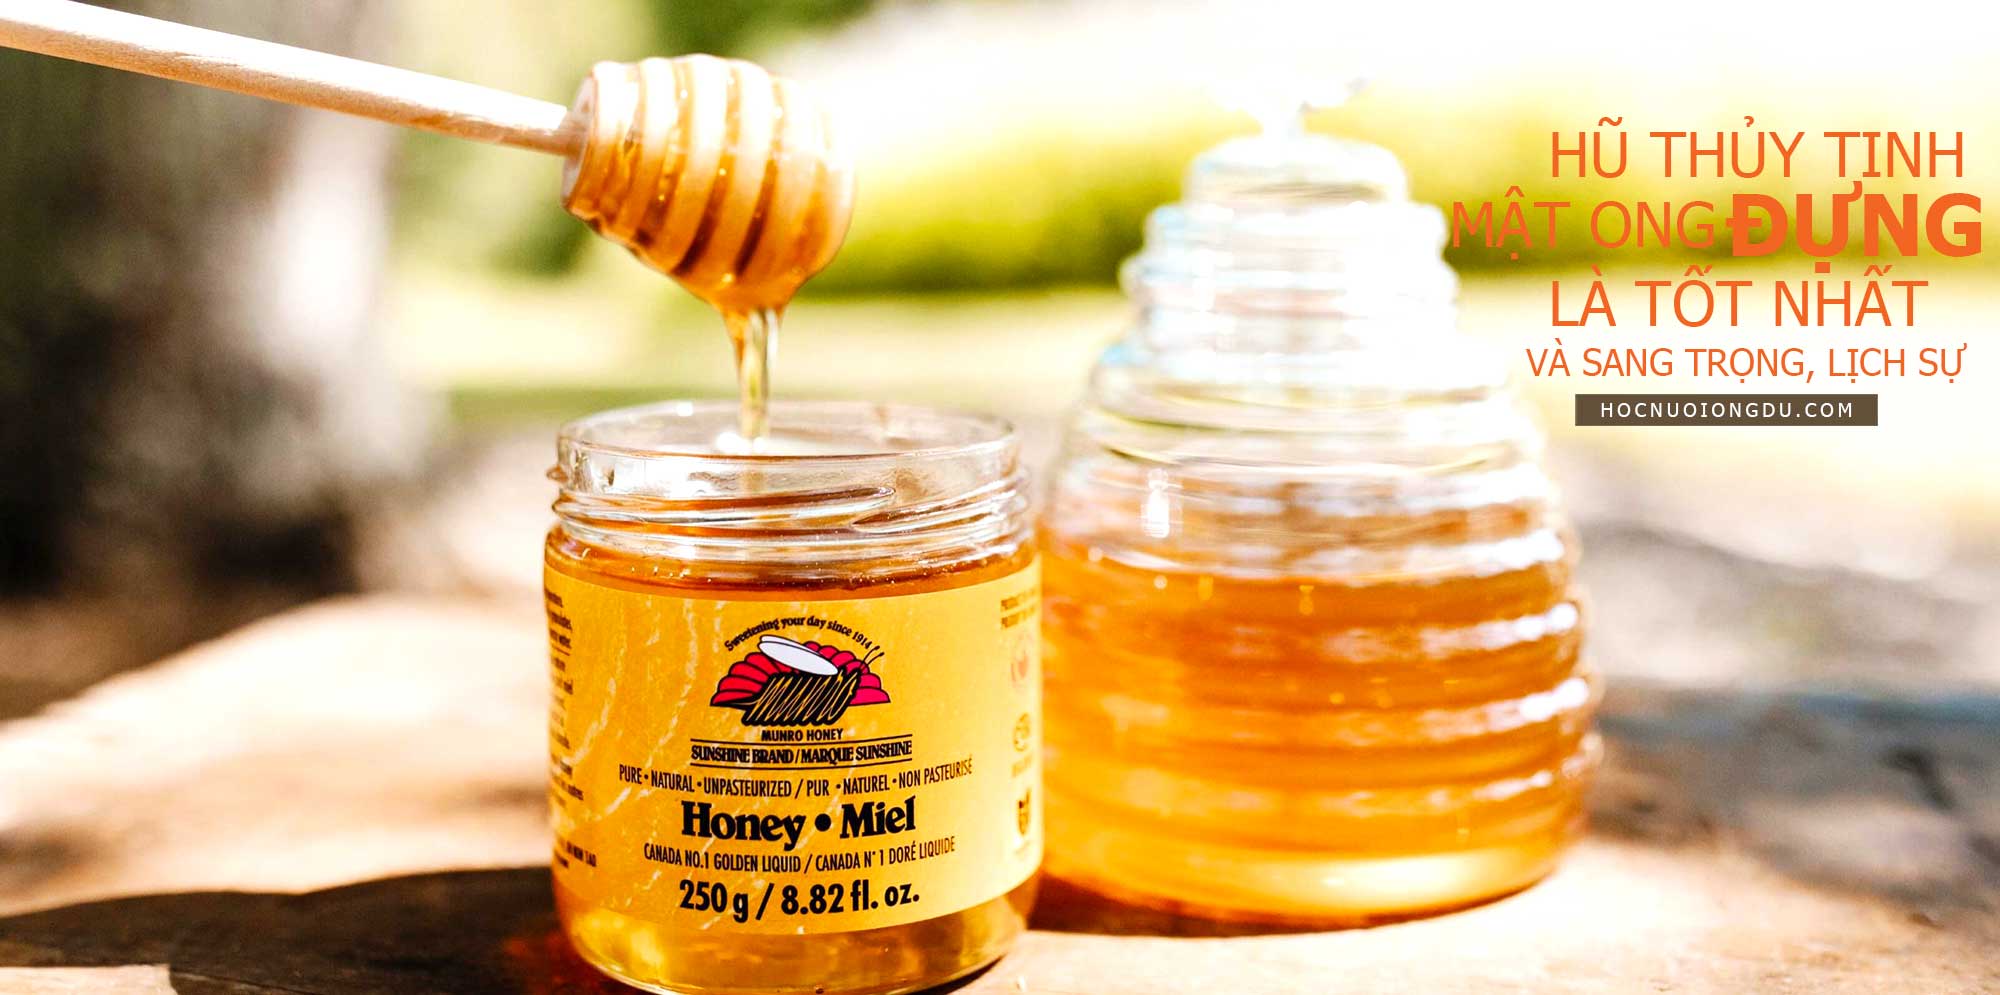 hũ đựng mật ong bằng thủy tinh là cách bảo quản tốt nhất